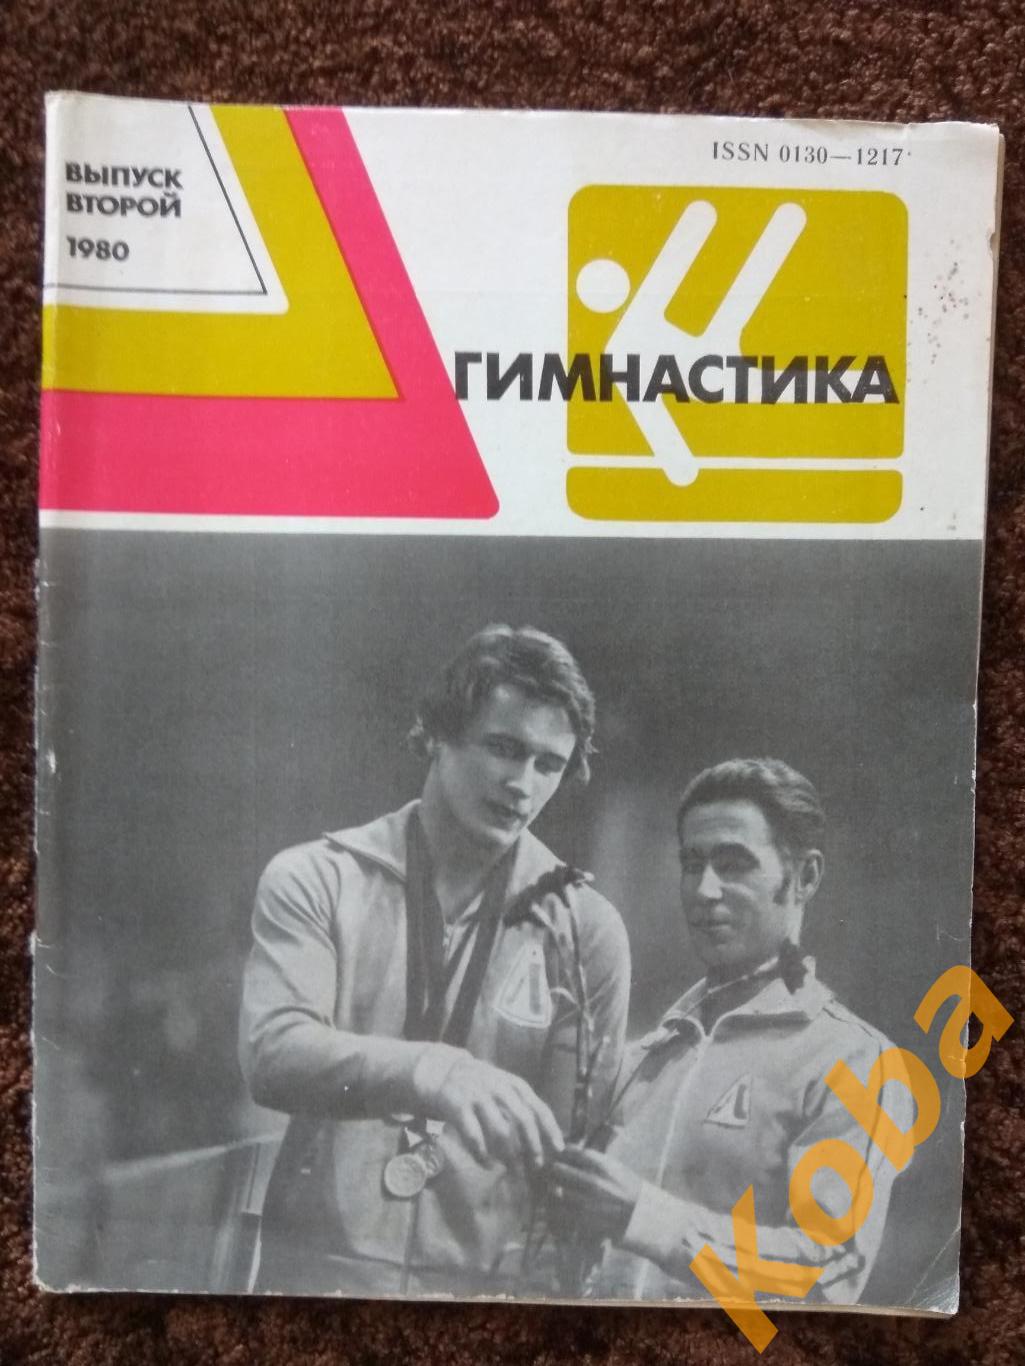 Гимнастика Сборник 1980 Спортивная Художественная Акробатика Прыжки на батуте